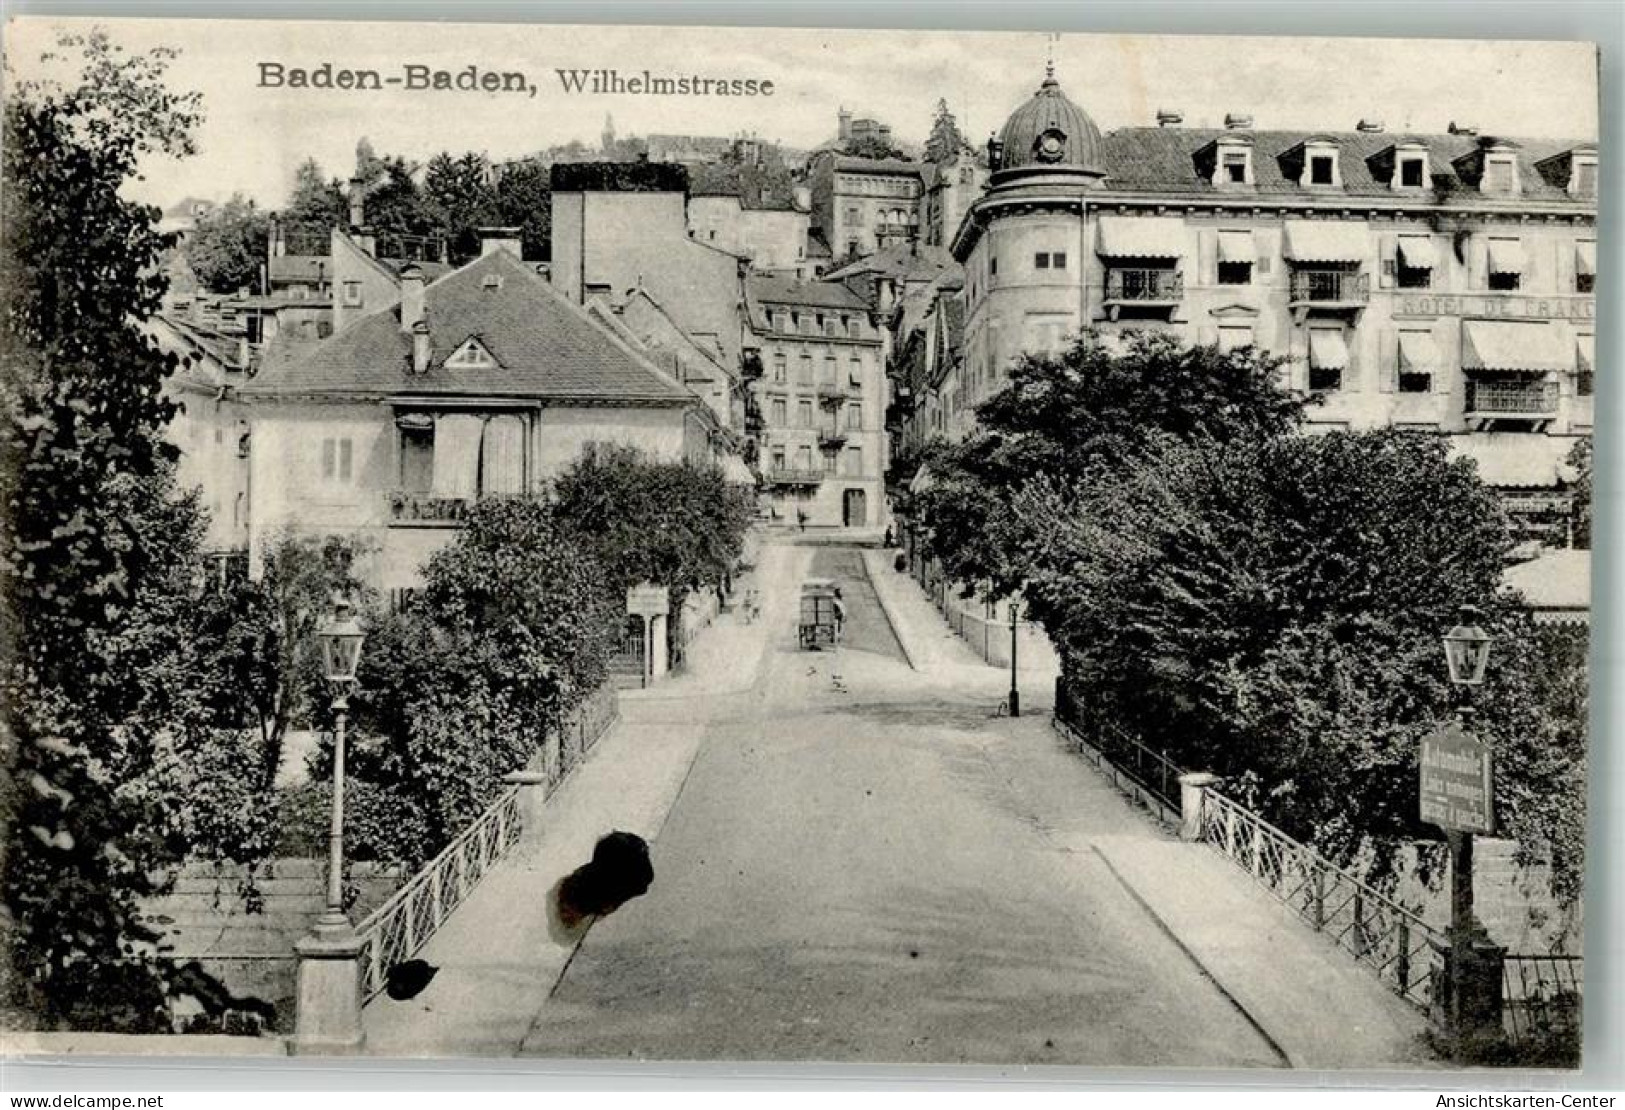 13295109 - Baden-Baden - Baden-Baden